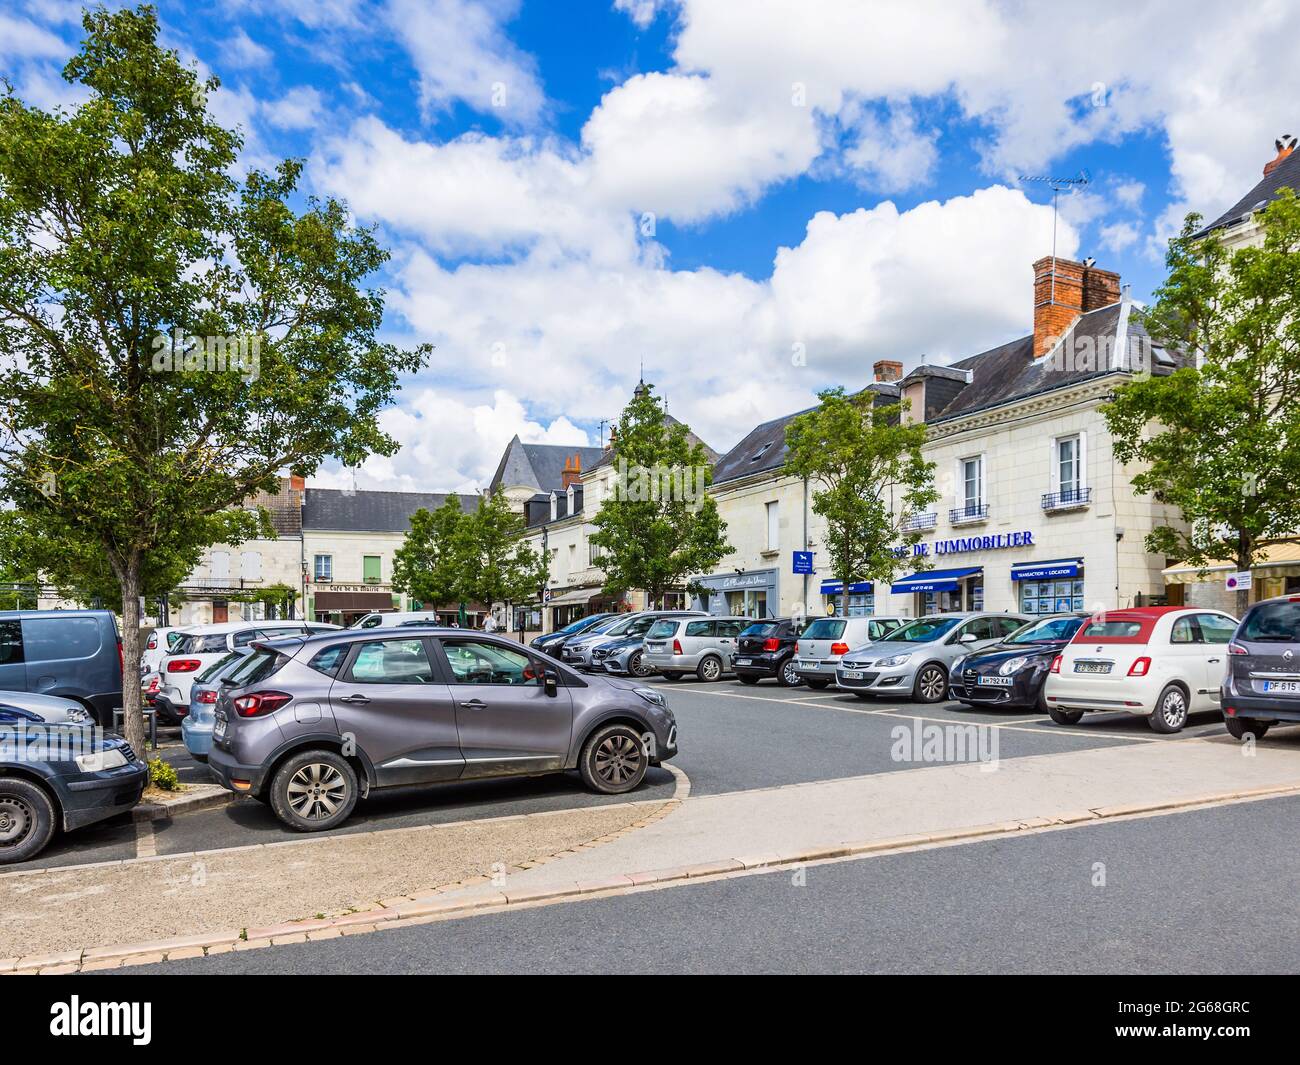 Market square car parking area, Sainte-Maure-de-Touraine, France. Stock Photo